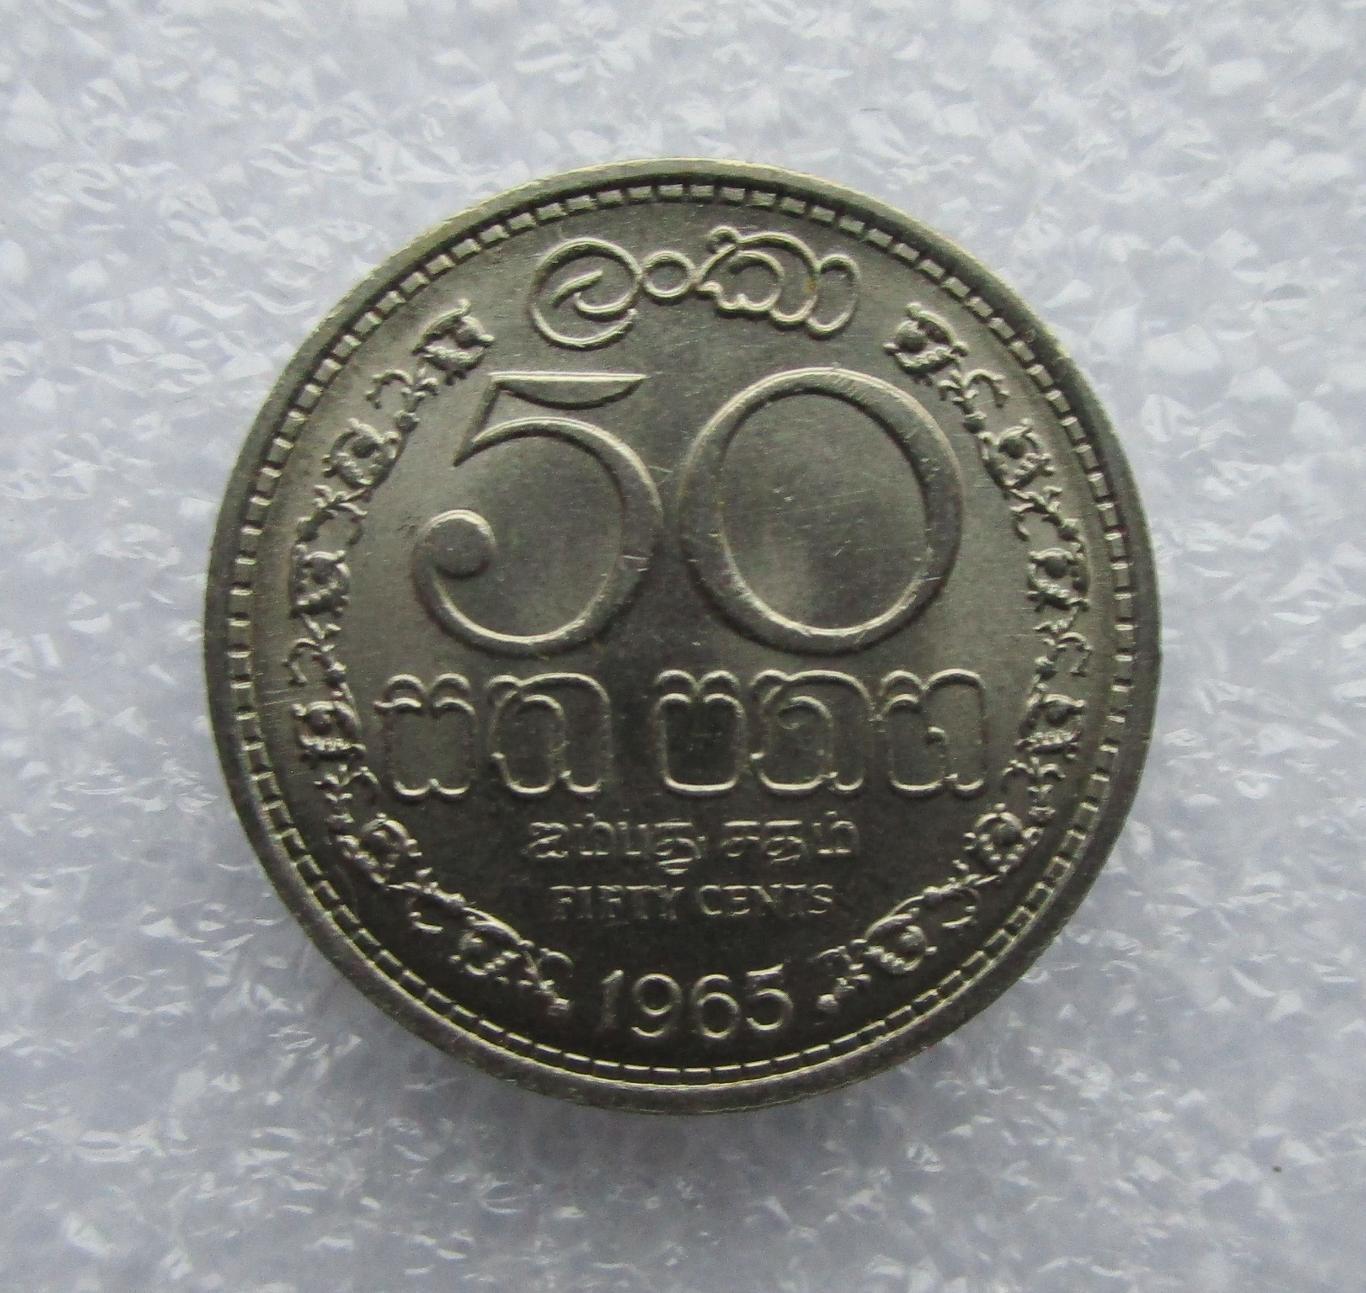 Цейлон, 50 центов - 1965. UNC. Штемпельный блеск.